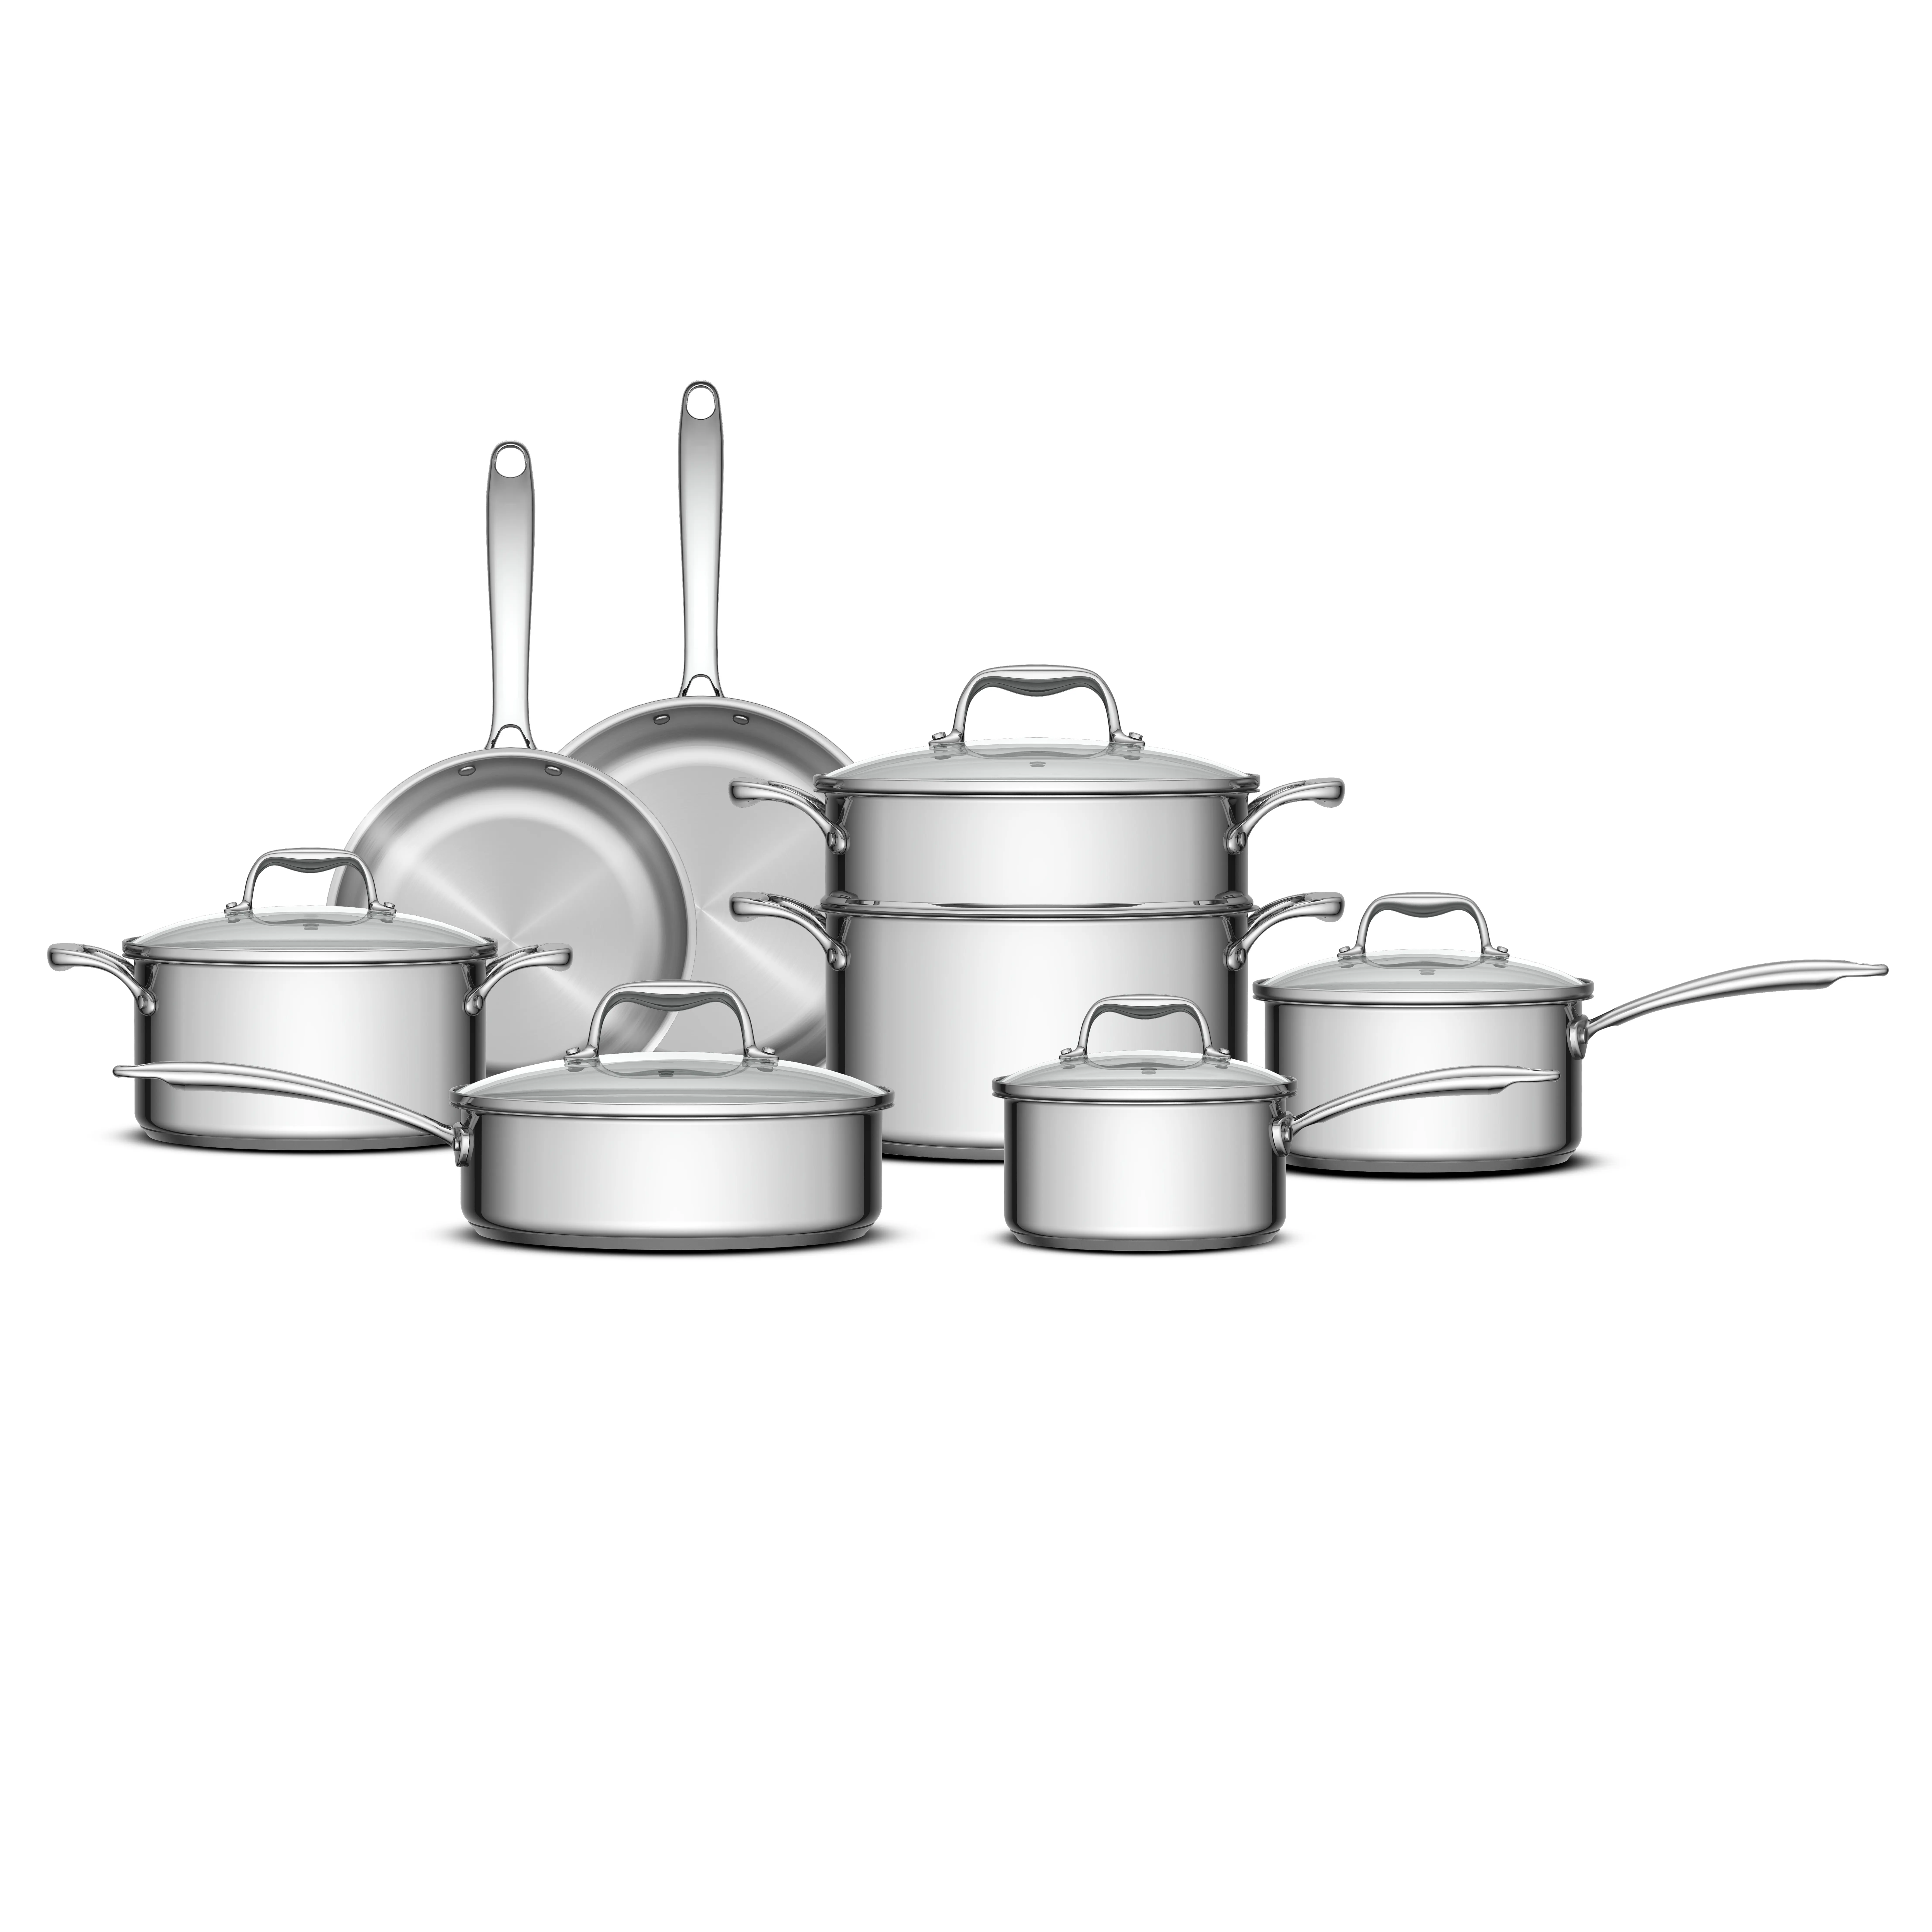 Panci kukus sup susu Stainless Steel, Set 8 buah peralatan masak dapur, panci kukus